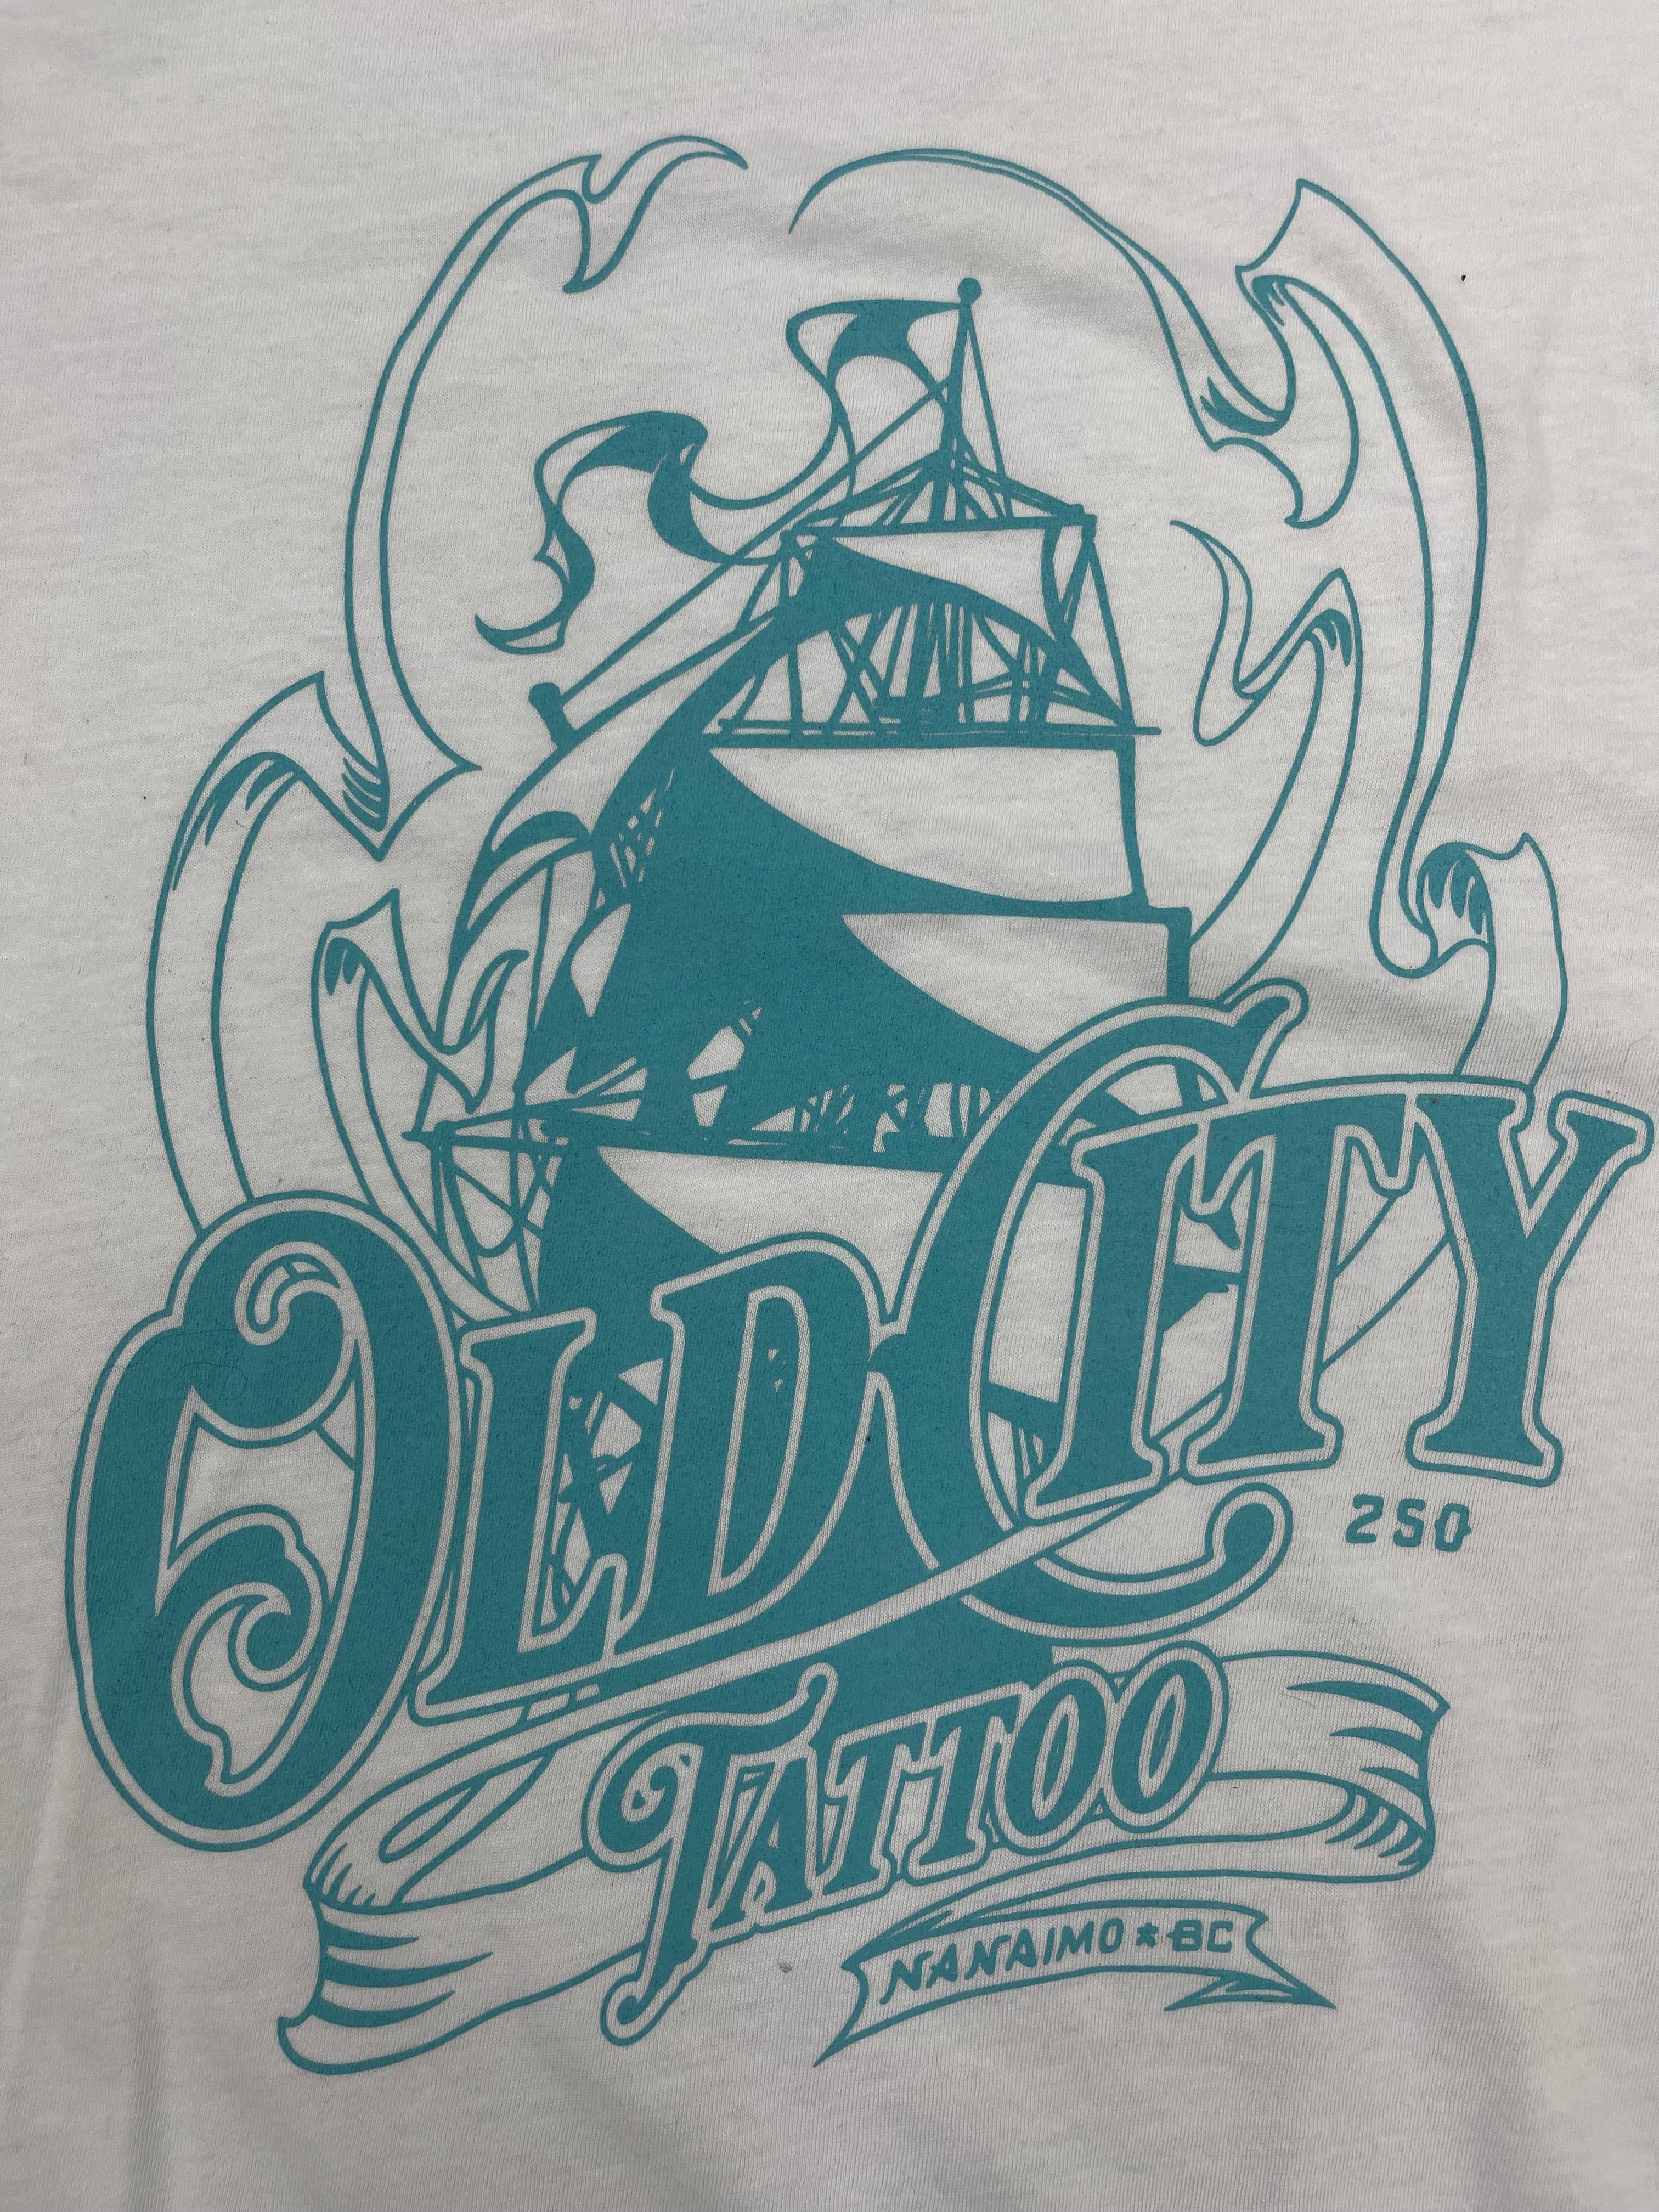 Old City Tattoo T-shirt